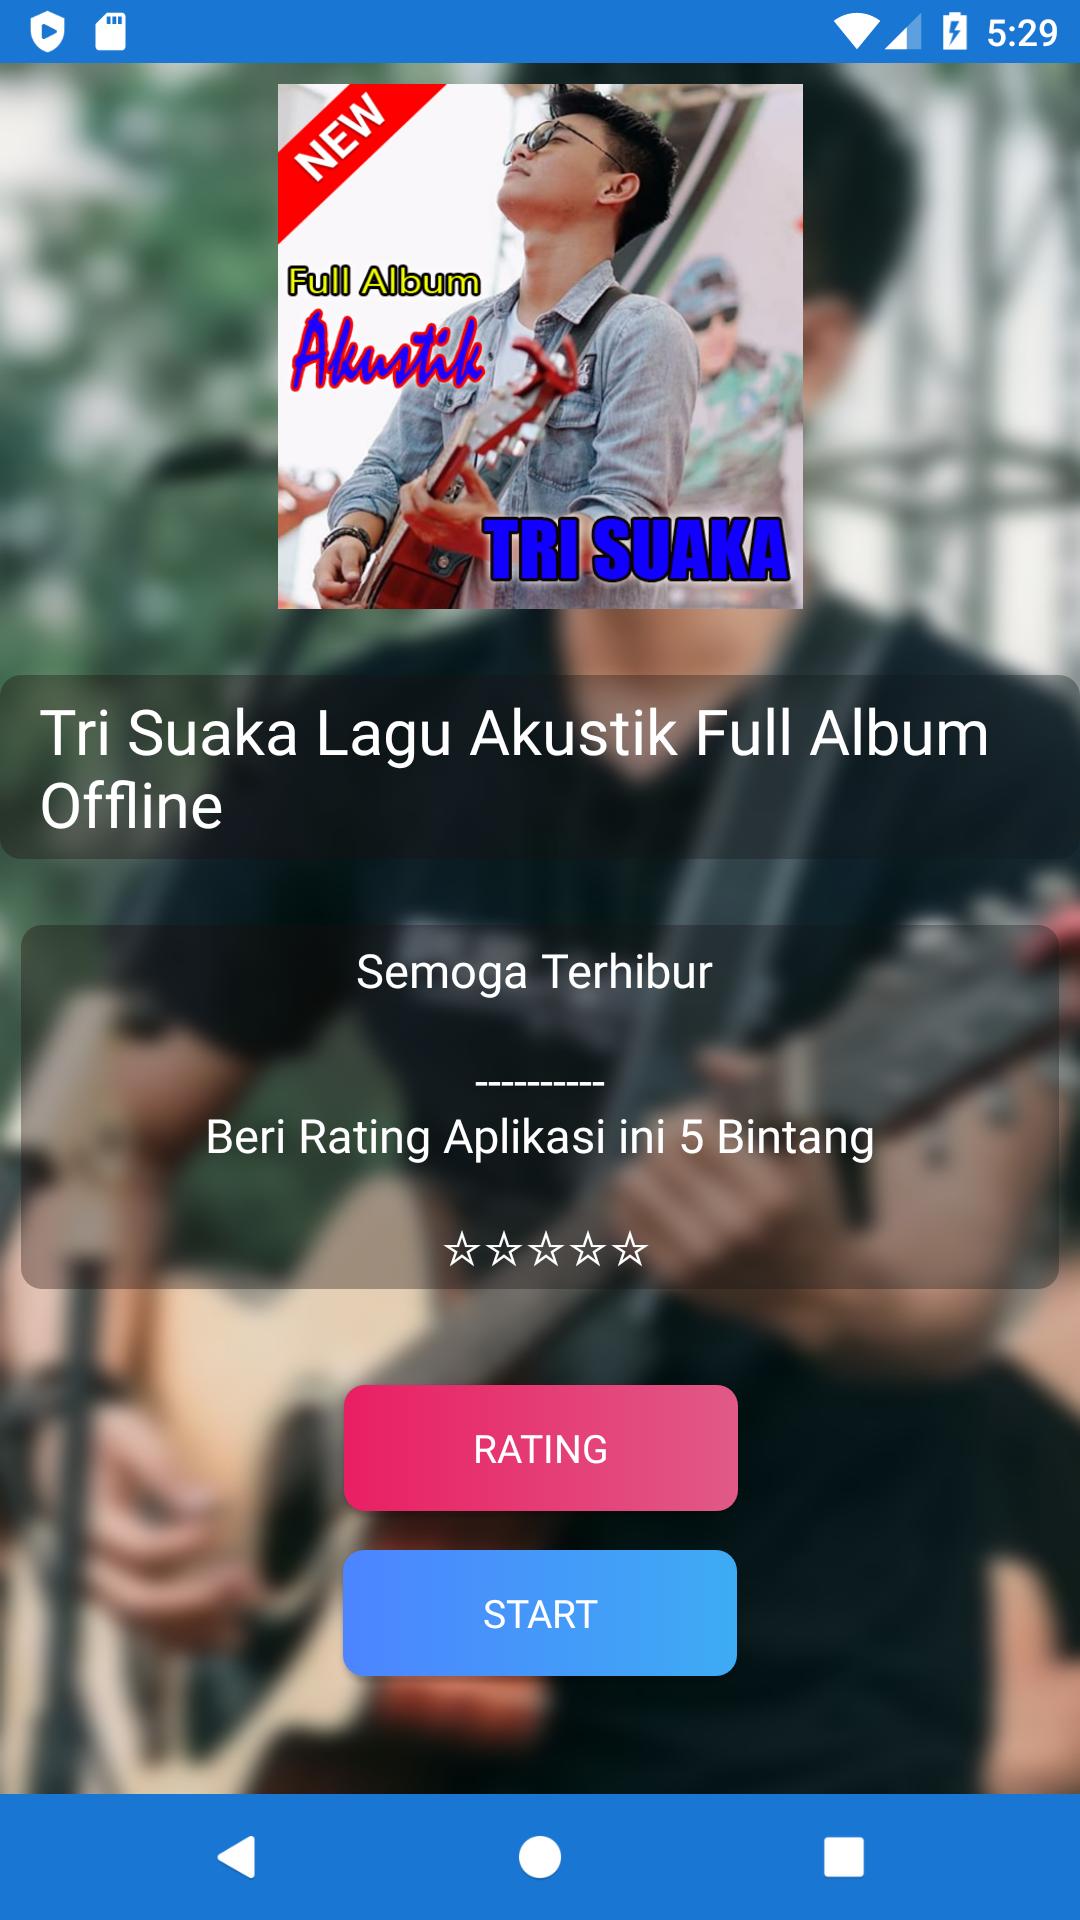 Tri Suaka Lagu Akustik Full Album Offline For Android Apk Download